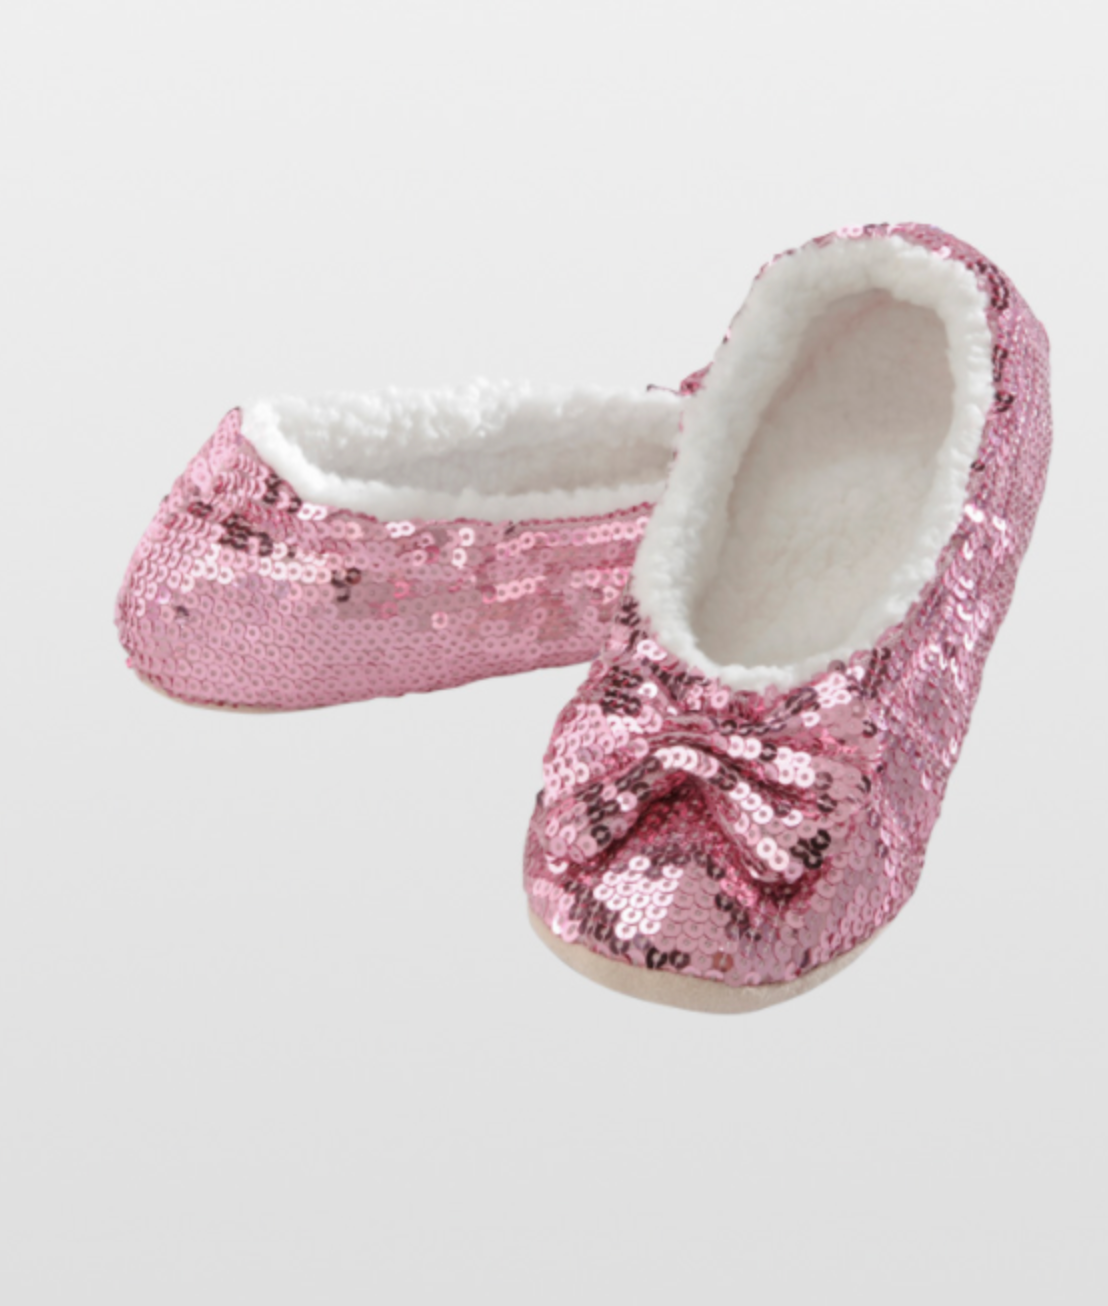 sequin ballerina slippers